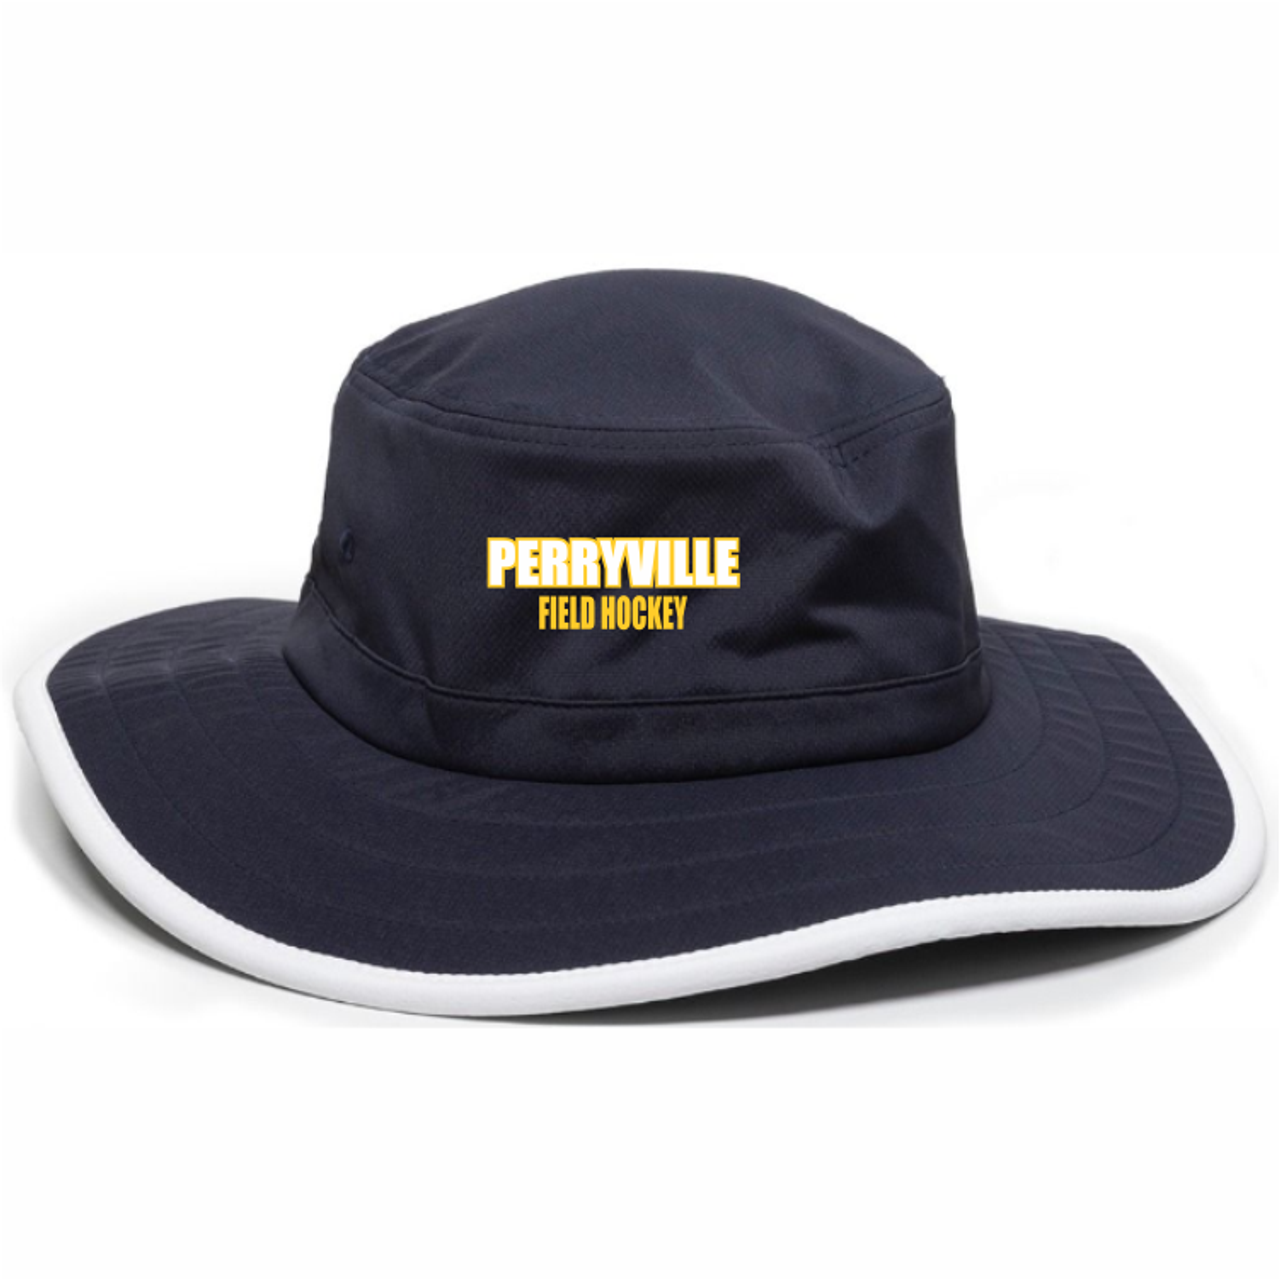 Perryville Field Hockey Boonie Hat